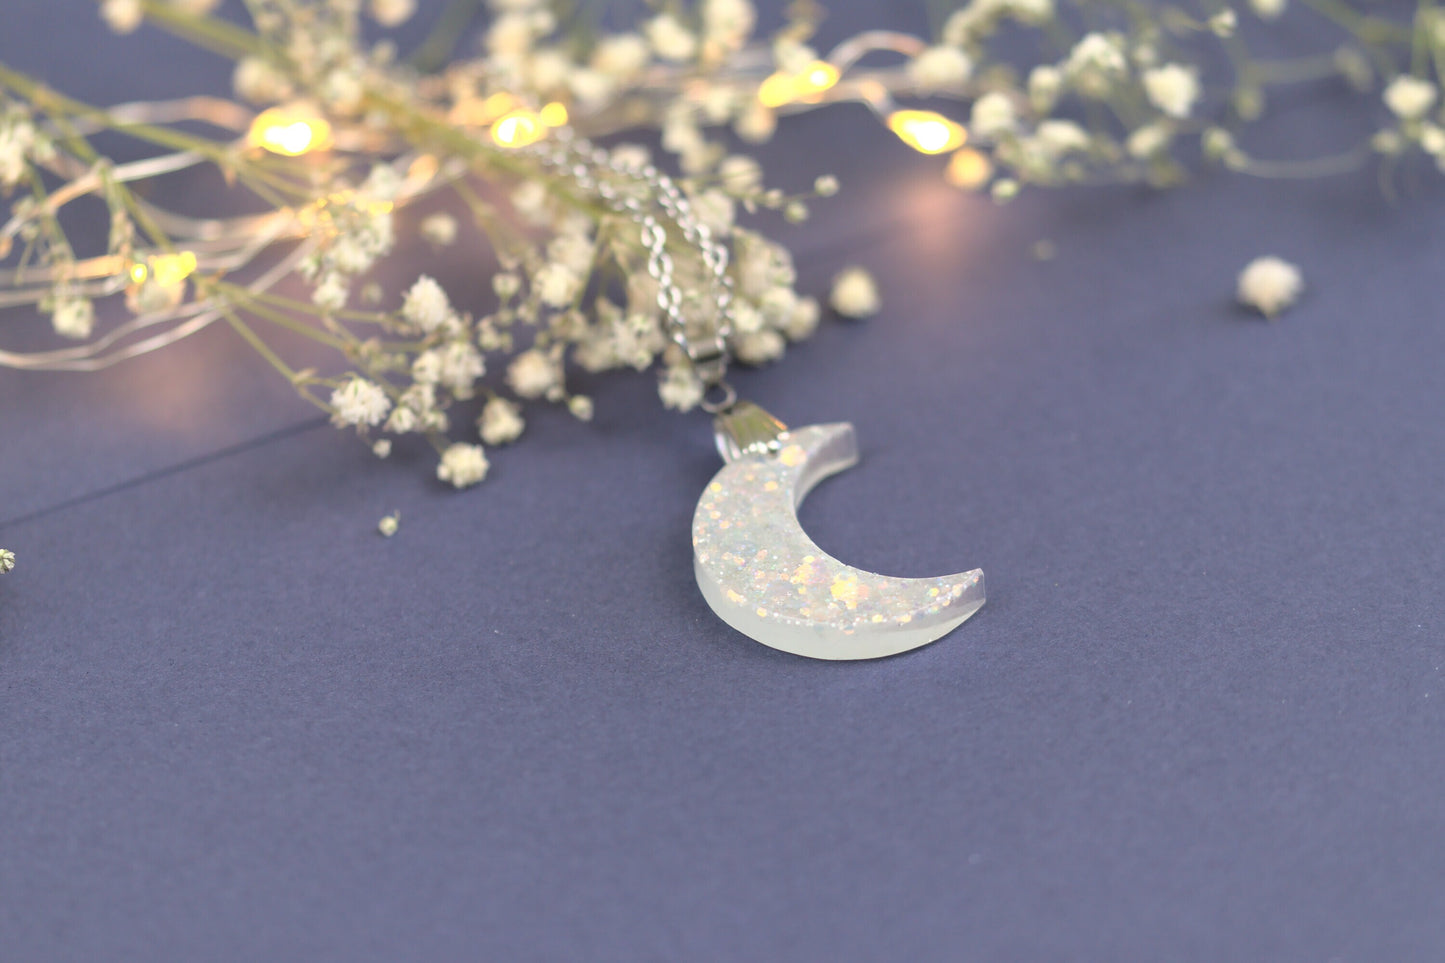 Colier Mic - Luna - Inox - Alb cu Argintiu - Handmade (colecția Clar de lună)